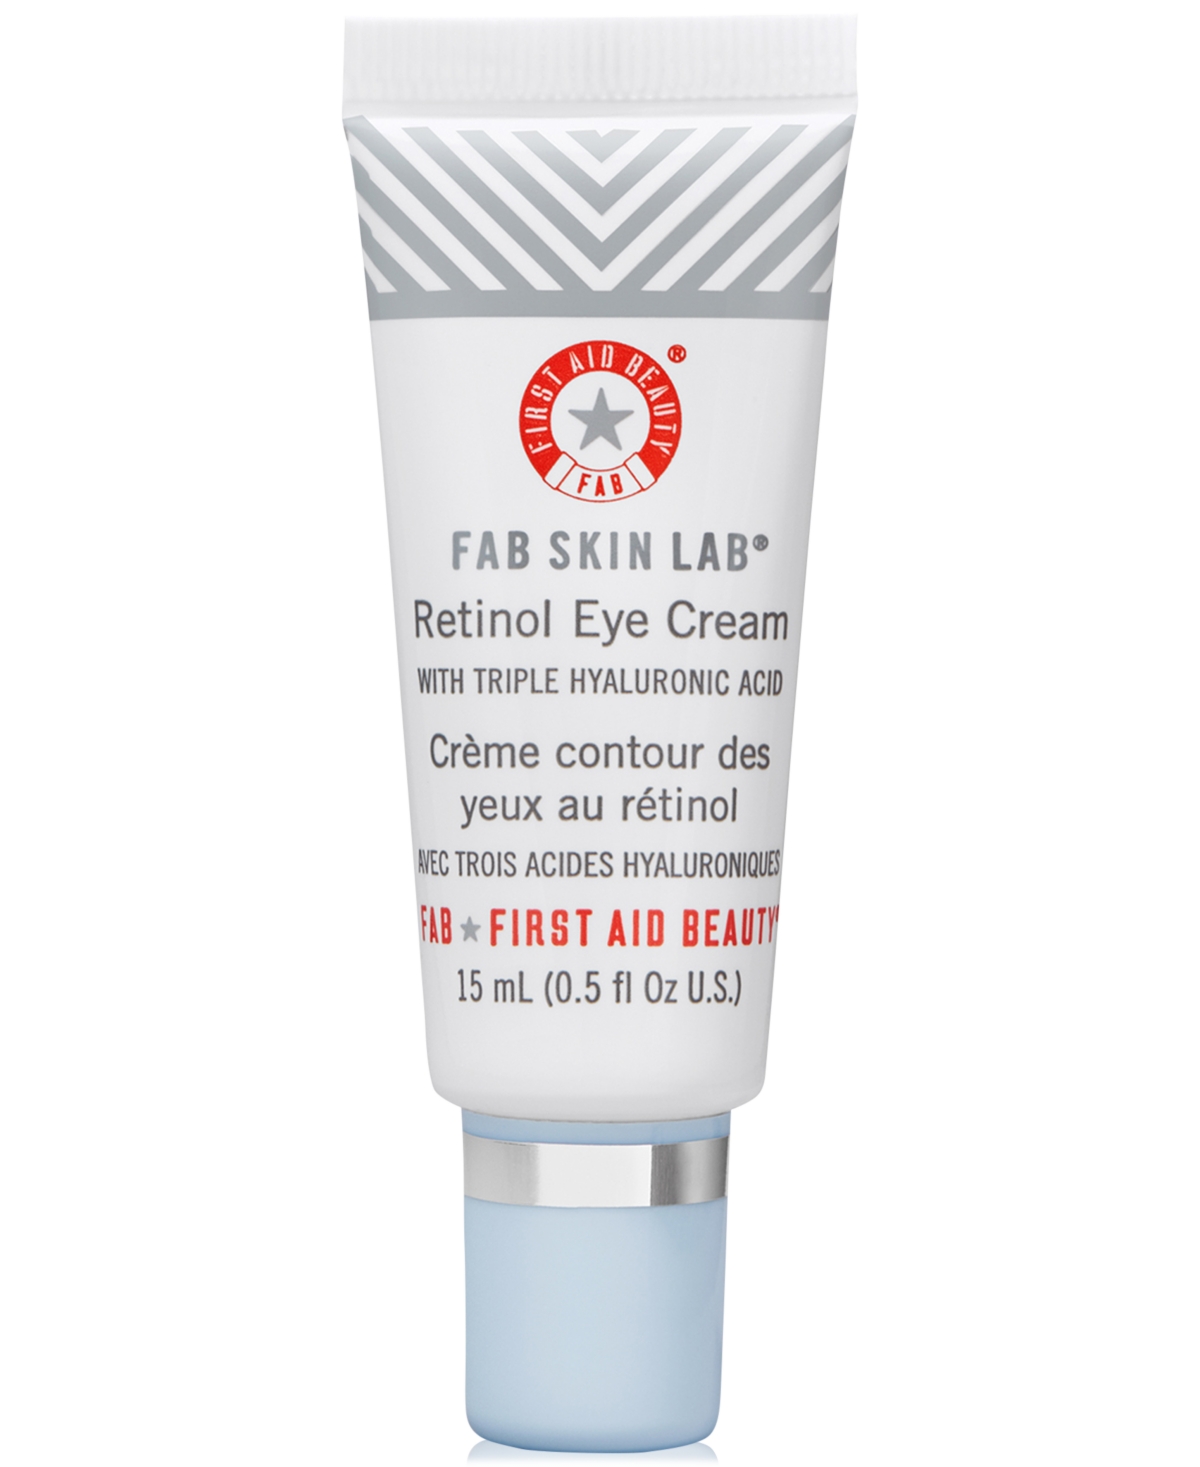 Fab Skin Lab Retinol Eye Cream With Triple Hyaluronic Acid, 0.5-oz.